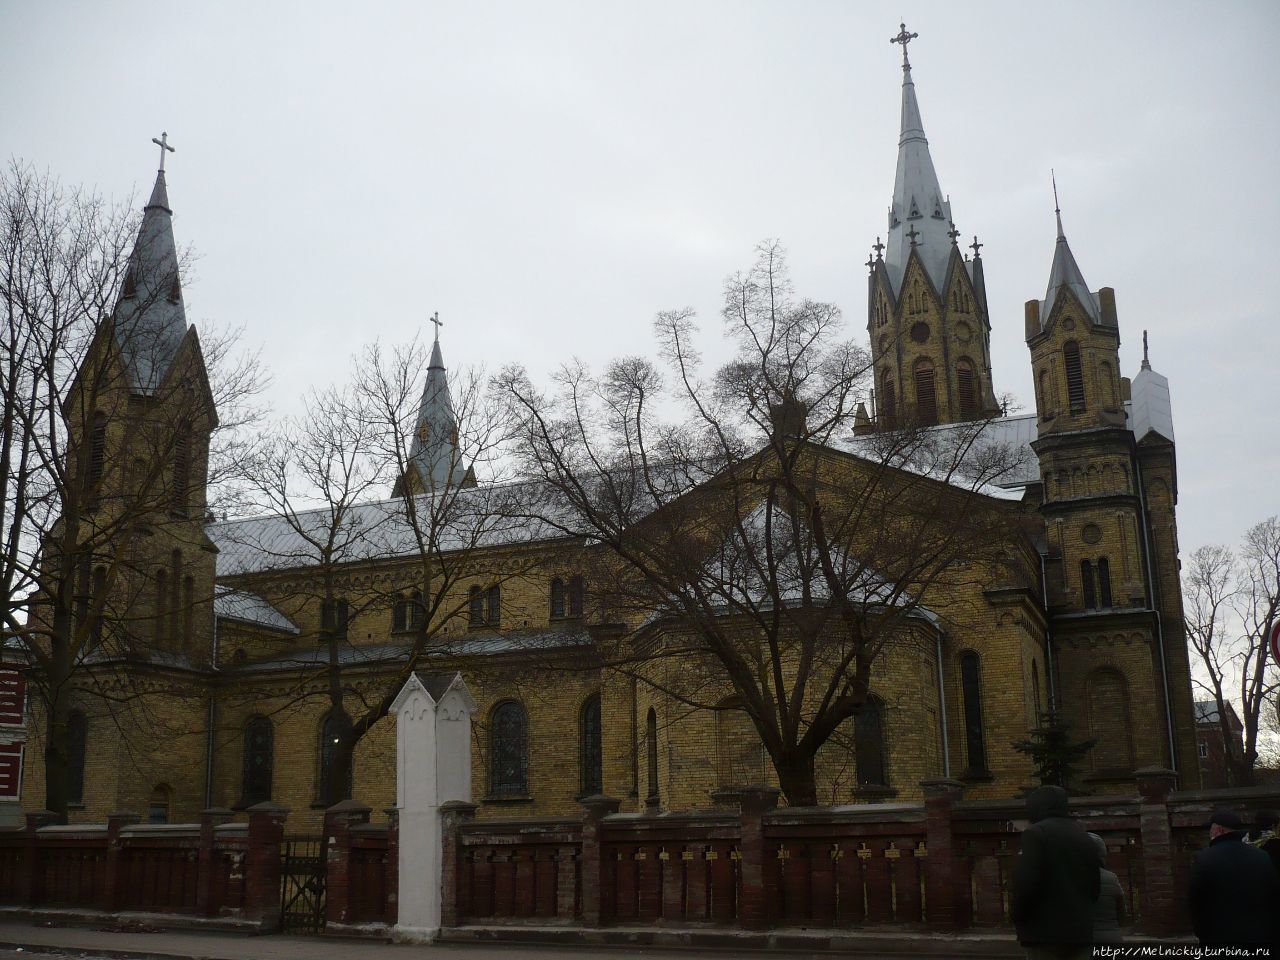 Кафедральный собор Святого Иосифа / St. Joseph's Cathedral